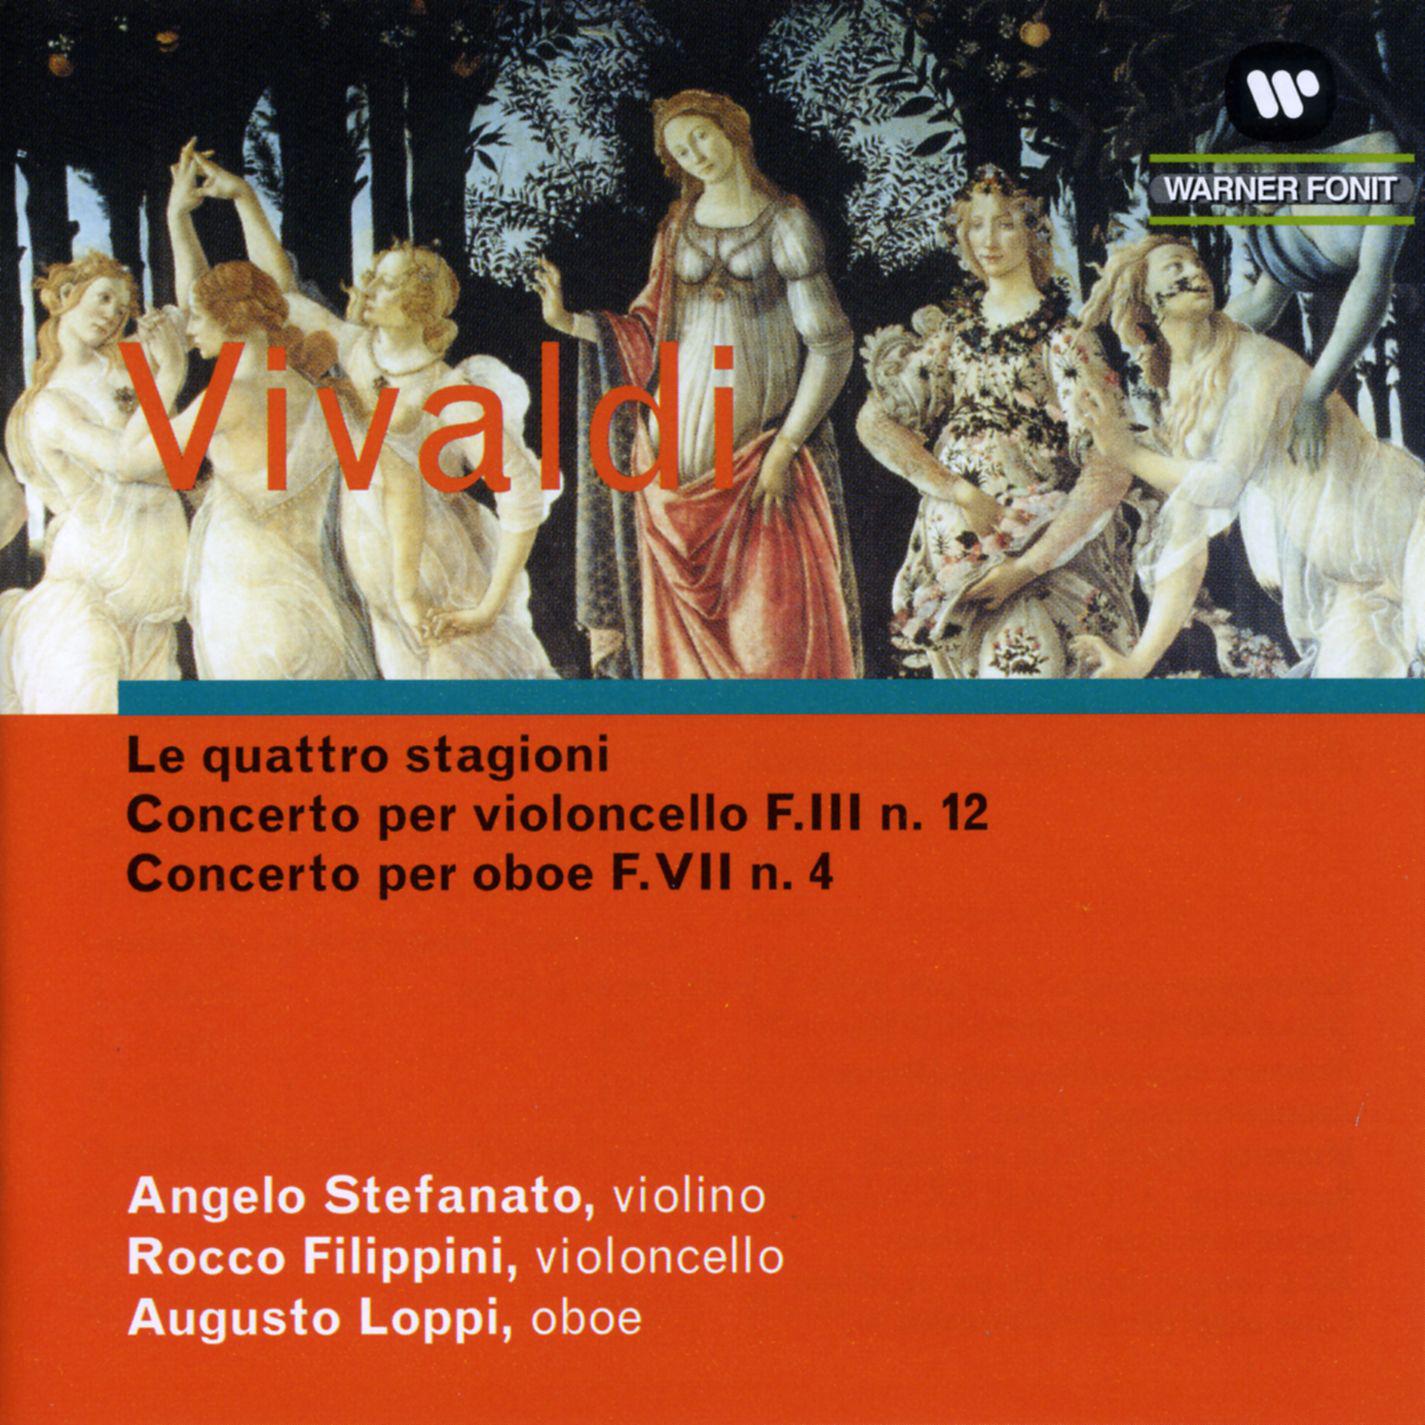 Violoncello, Strings and Harpsichord Concerto No. 12 in C Major, F. 3: I. Allegro